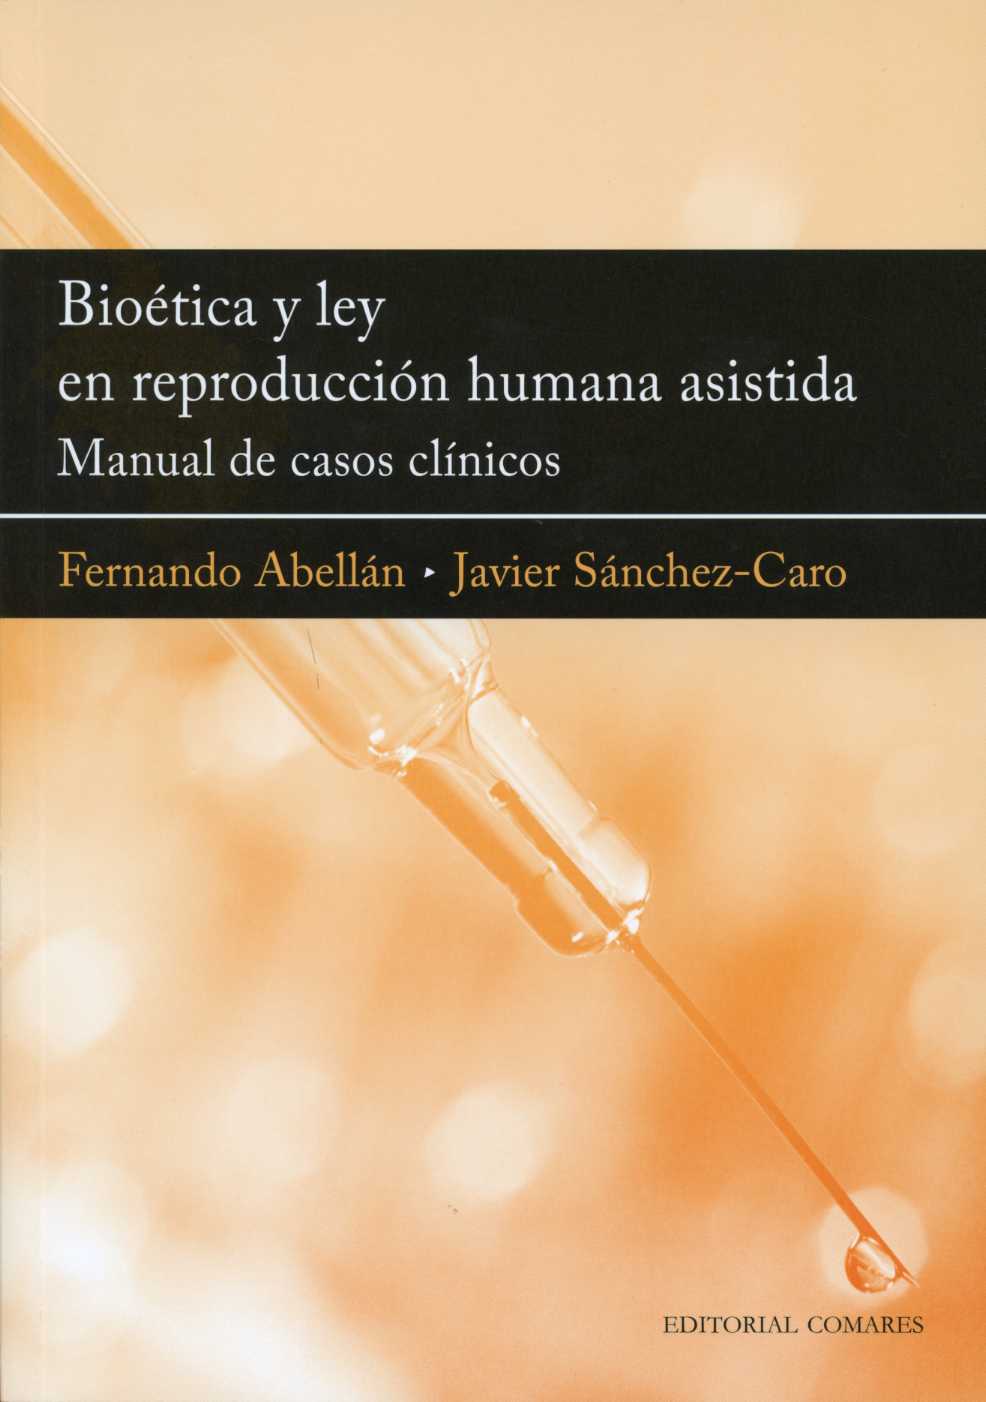 Biotica y ley en reproduccin humana asistida